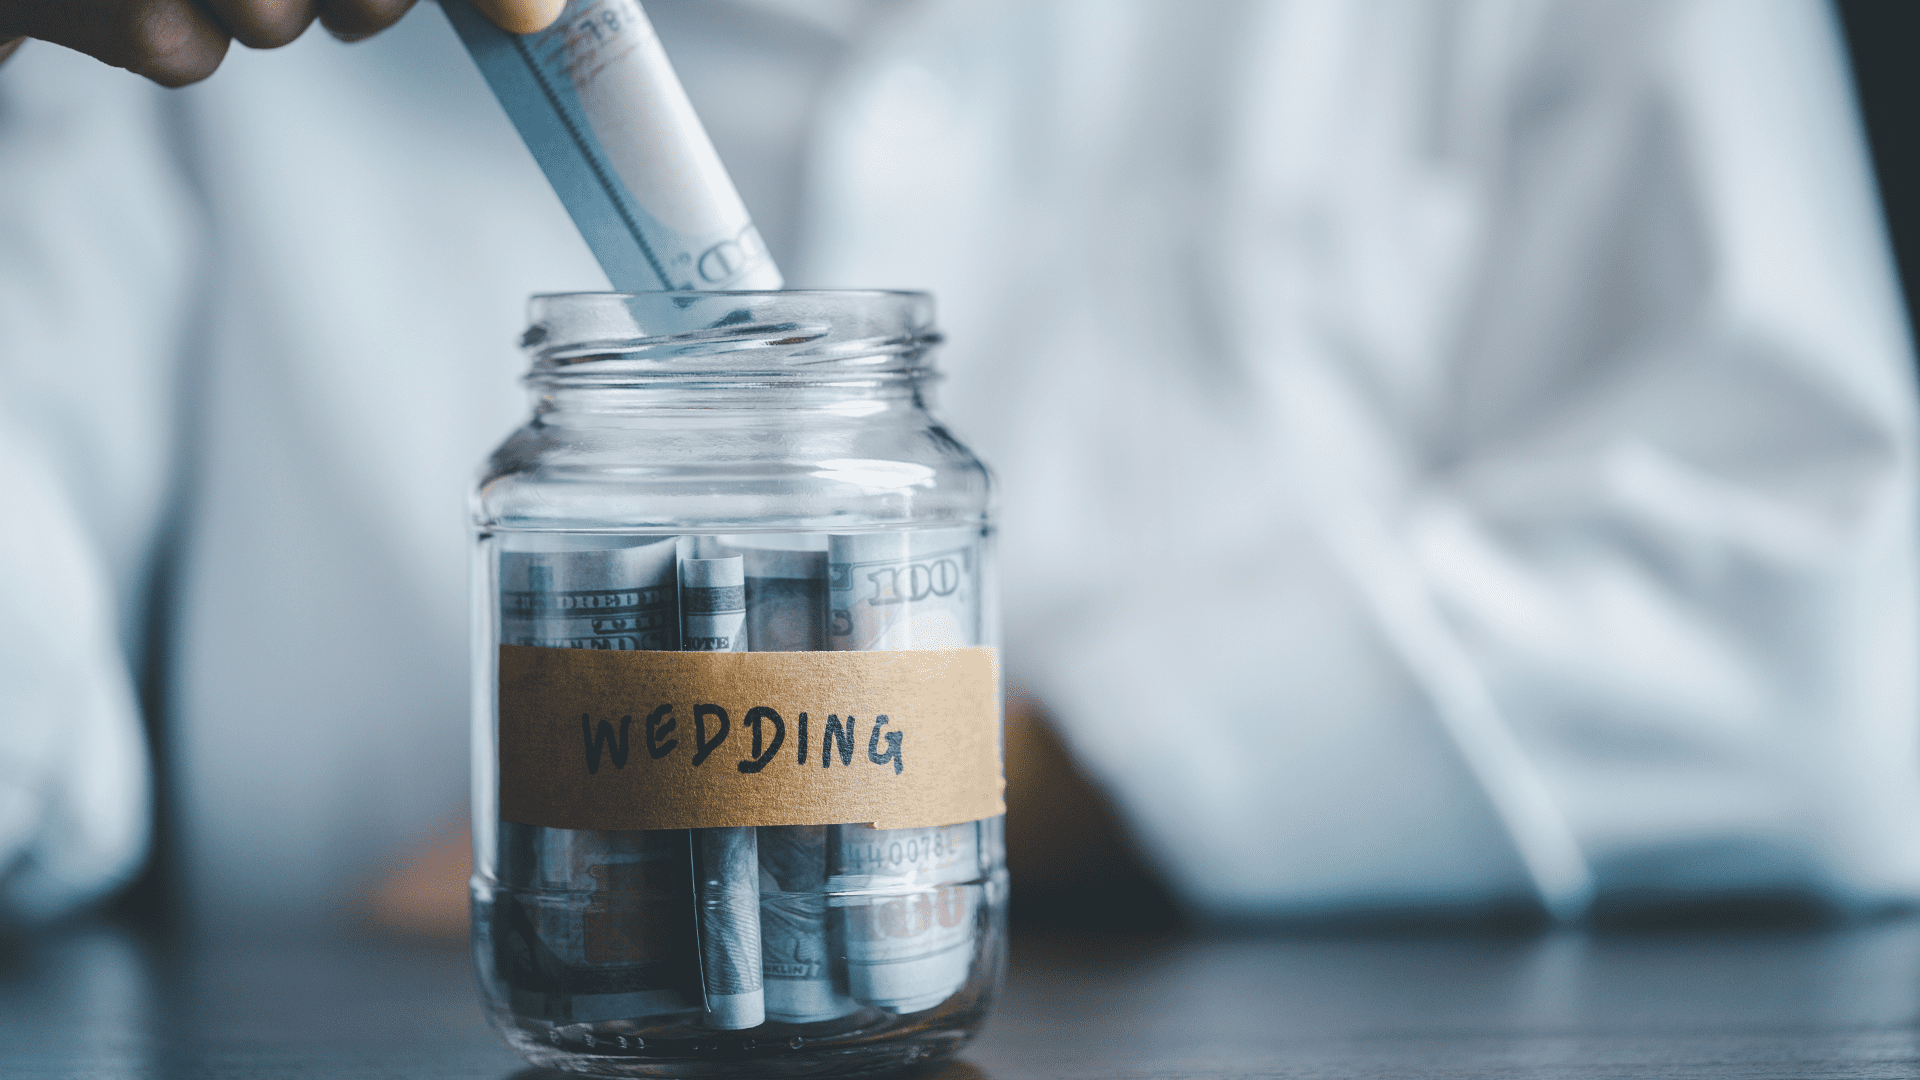 wedding dress wedding budget wedding tips wedding malaysia wedding couple